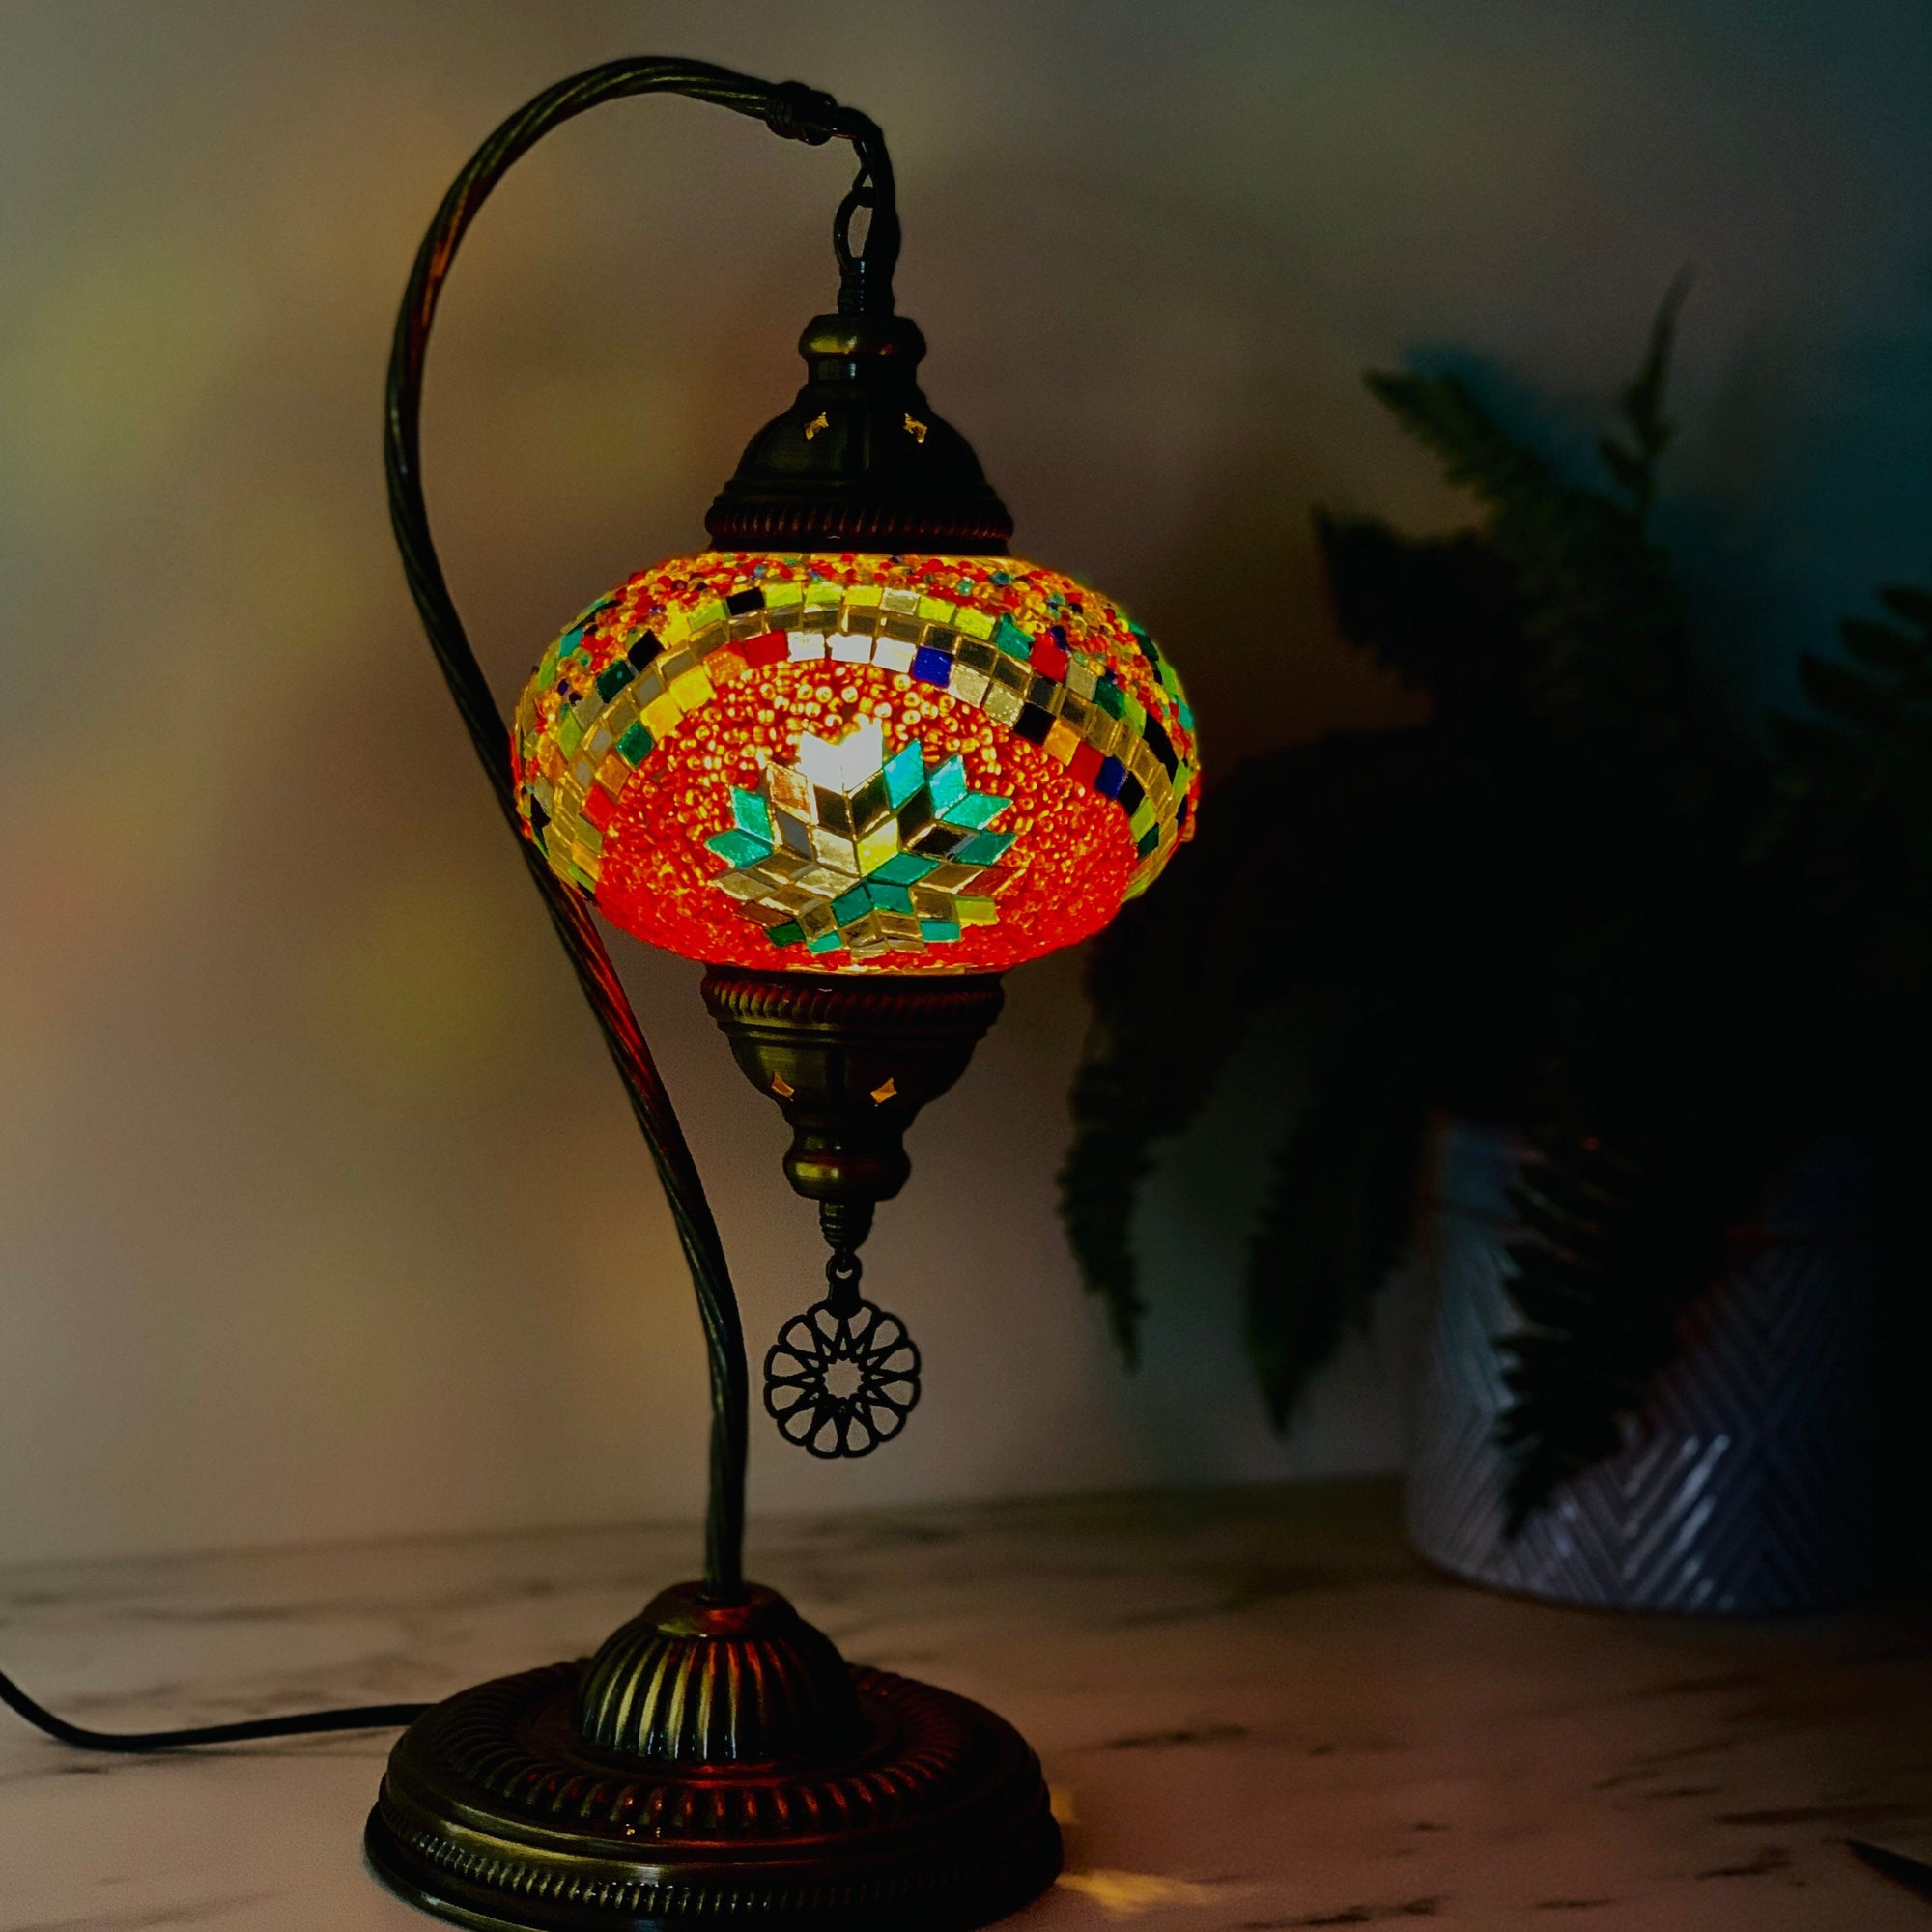 Half Heart Turkish Mosaic Lamp, 4 Decor Natto USA 